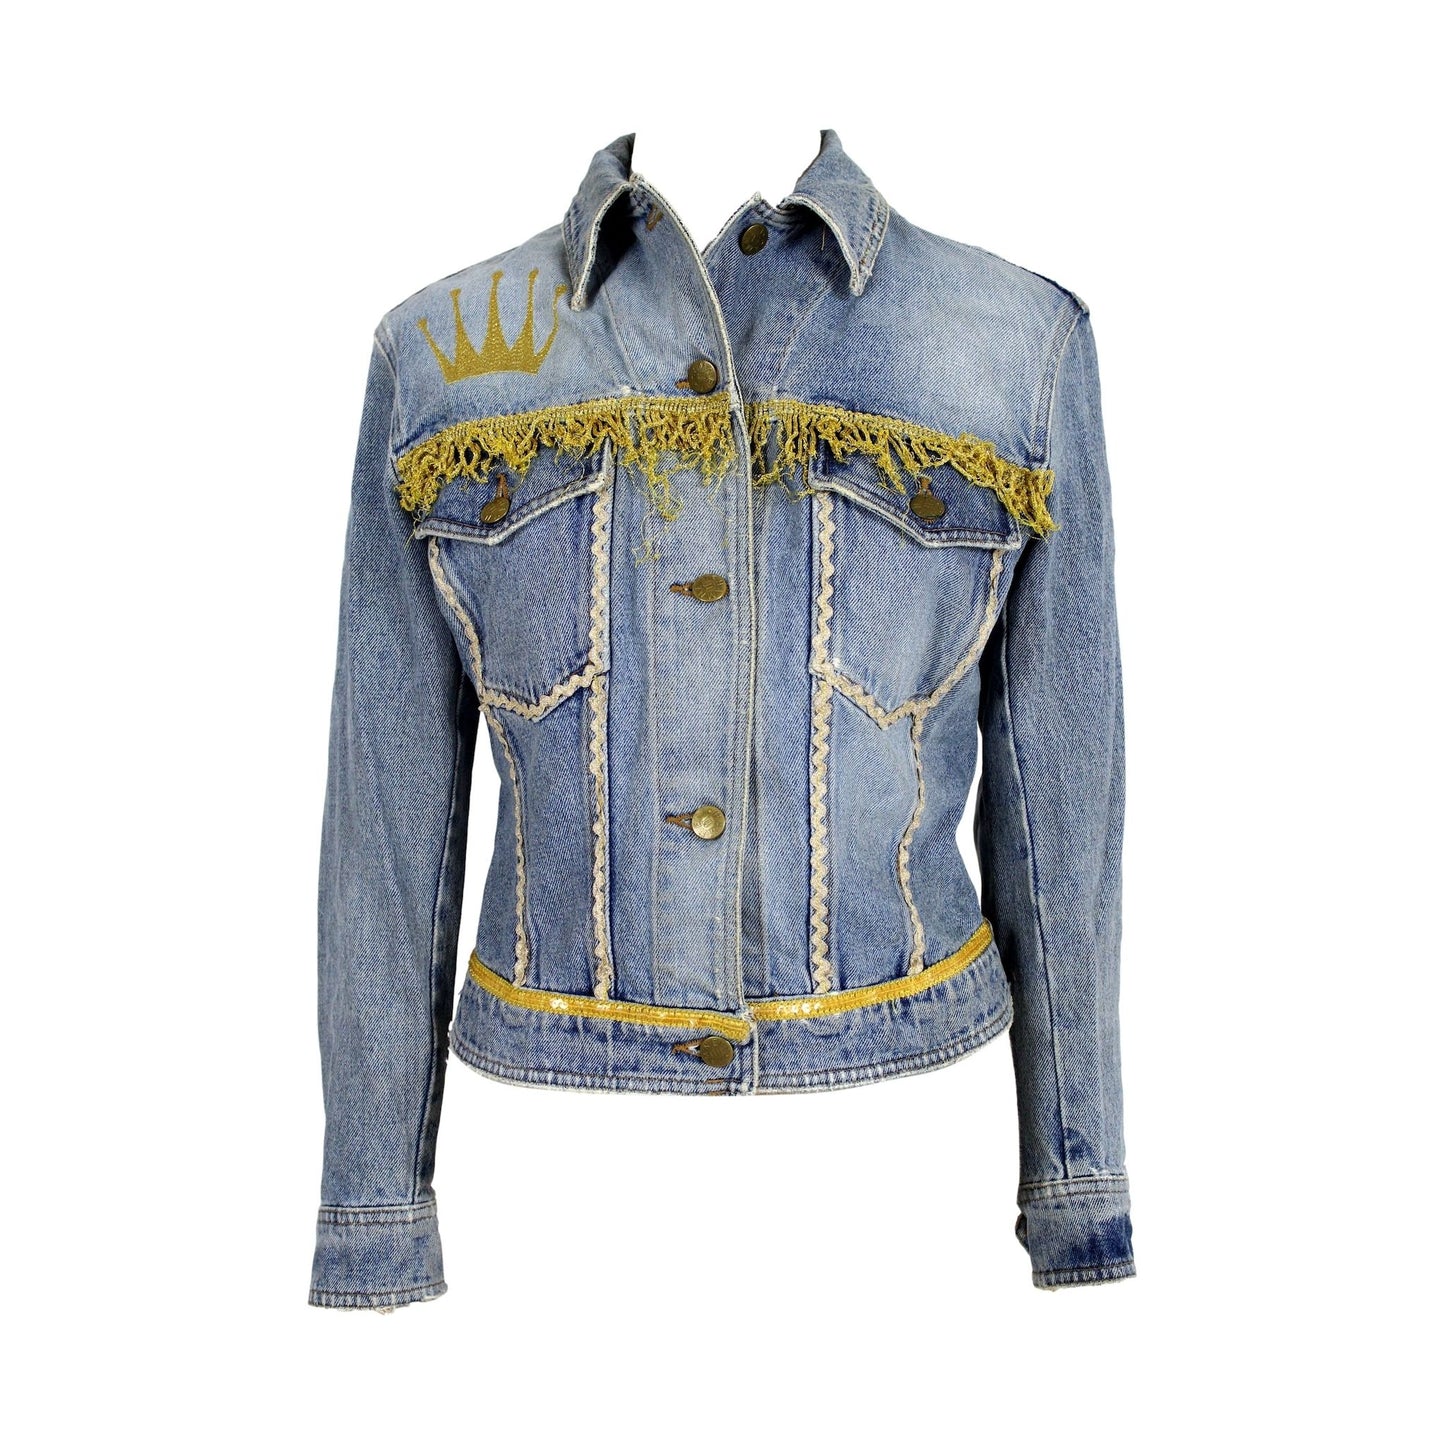 Katharine Hamnett Jeans Golden Fringes Jacket 90s